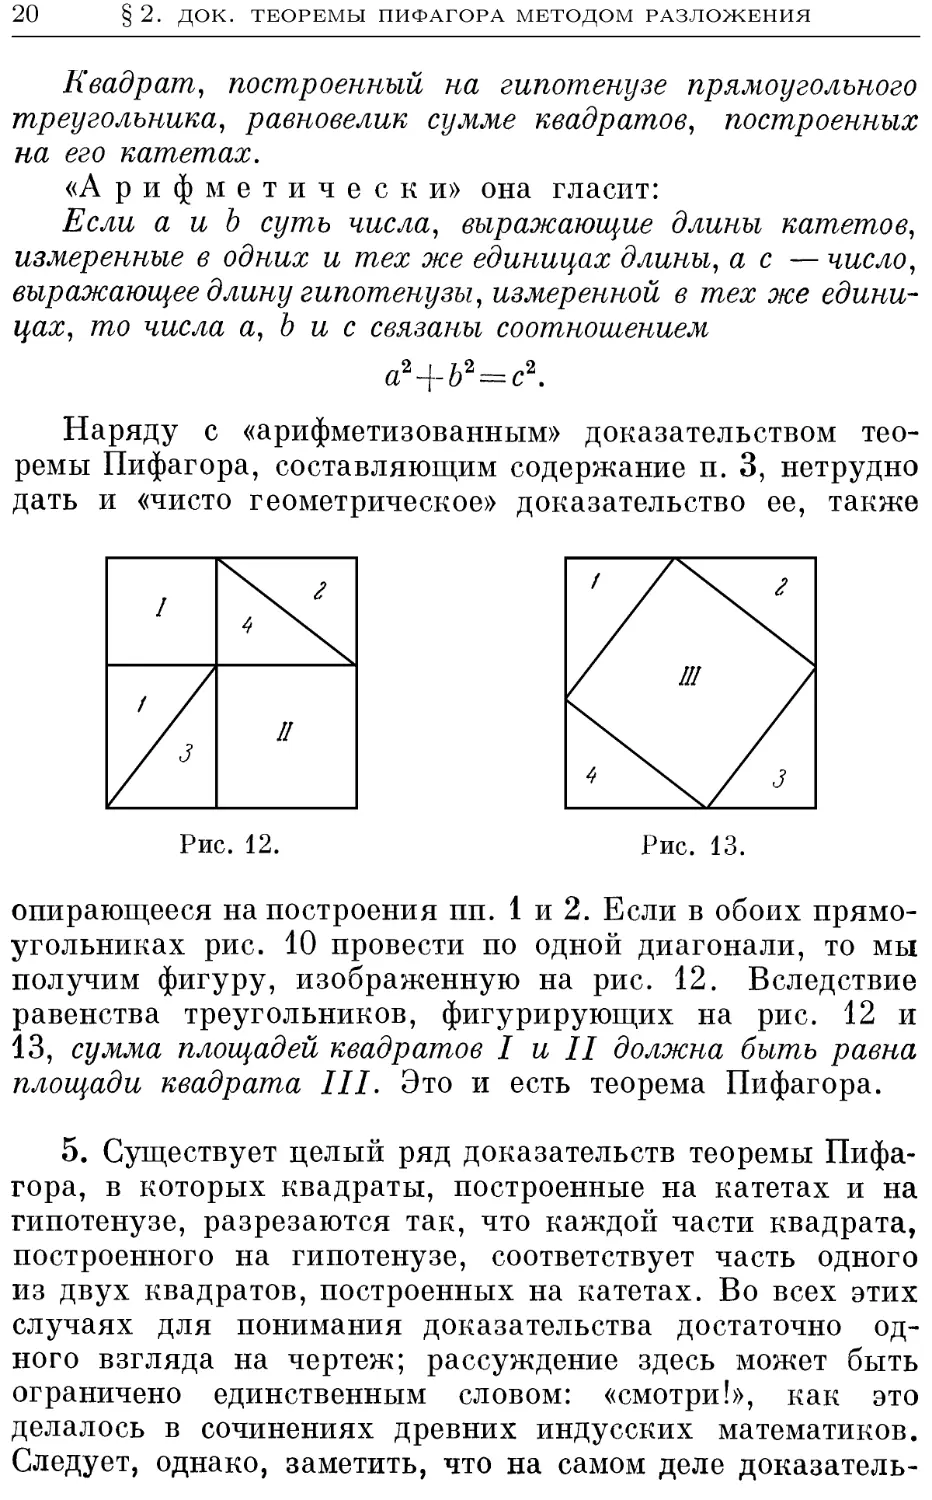 2.3. Доказательства теоремы Пифагора методом разложения